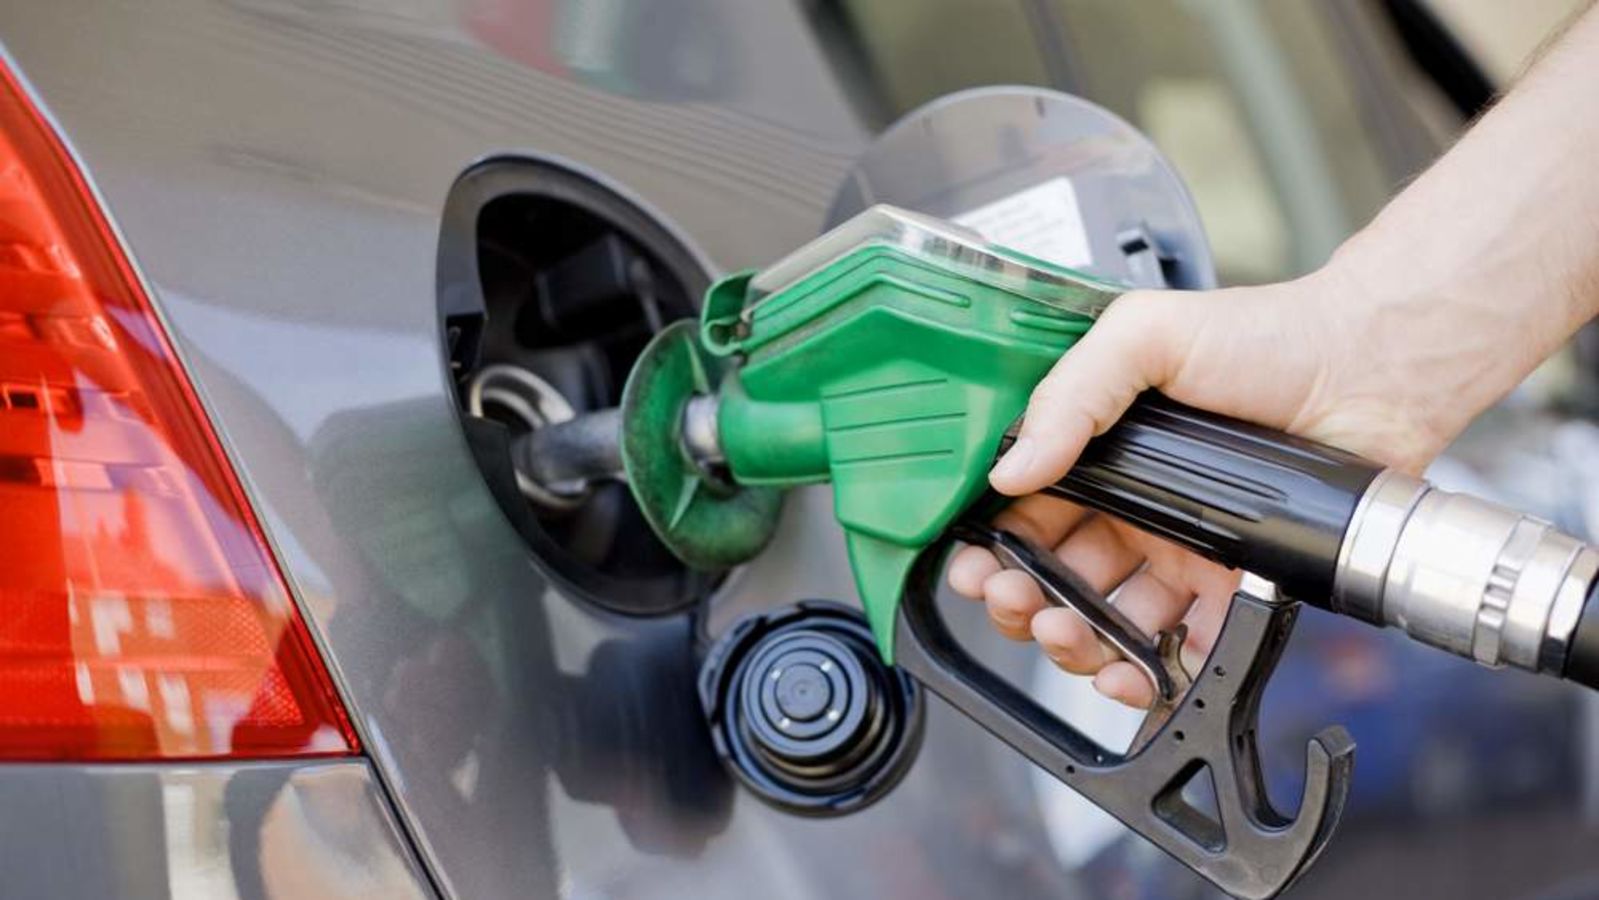  لجنة تسعير المنتجات البترولية تقرر تثبيت أسعار البنزين بأنواعه الثلاثة